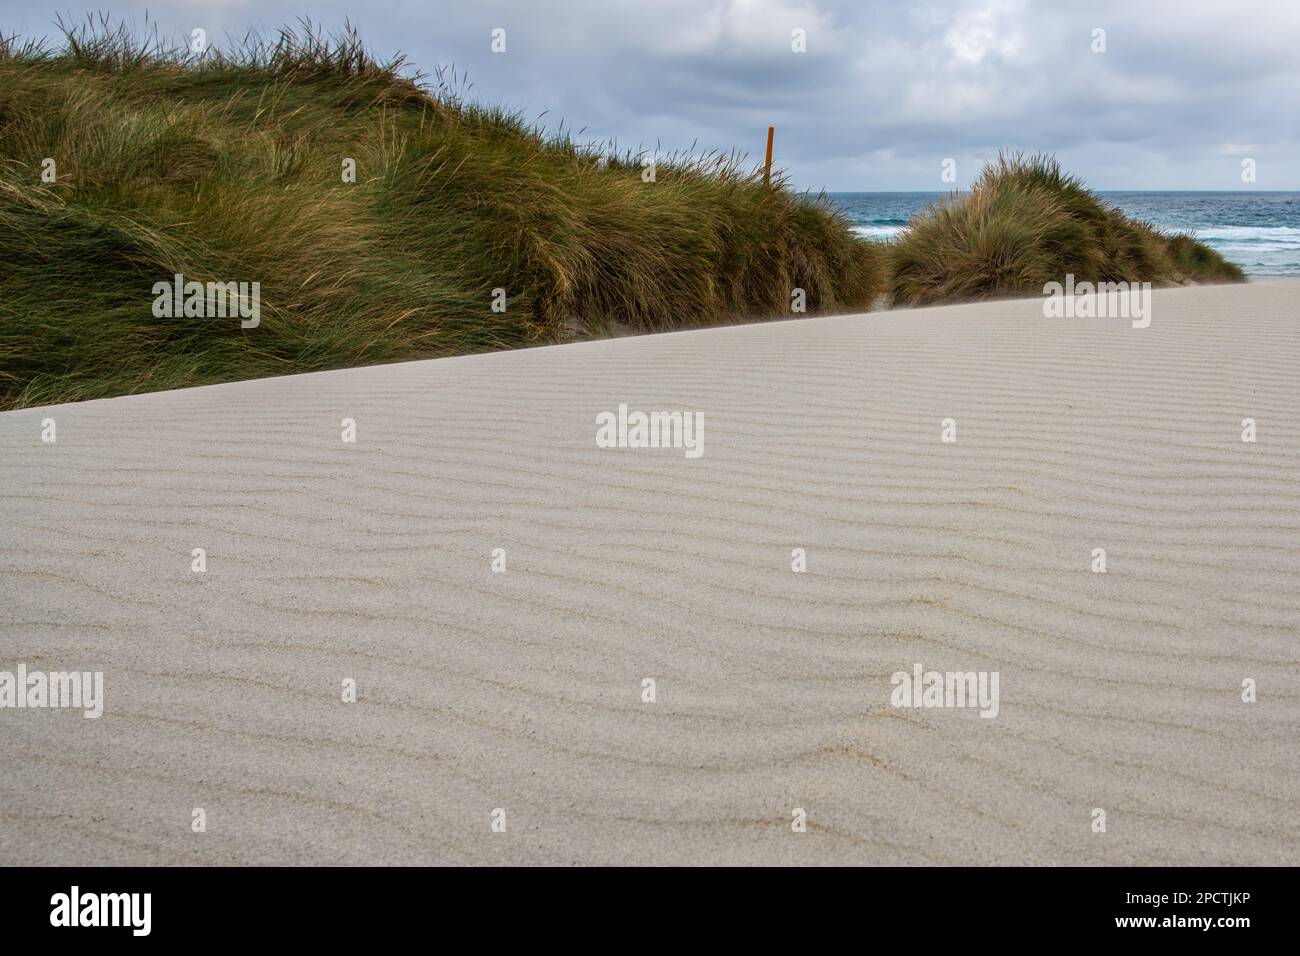 Dune de sable blanc et les motifs des ondulations dans le sable avec l'océan pacifique derrière, une scène minimaliste à Aotearoa Nouvelle-Zélande. Banque D'Images